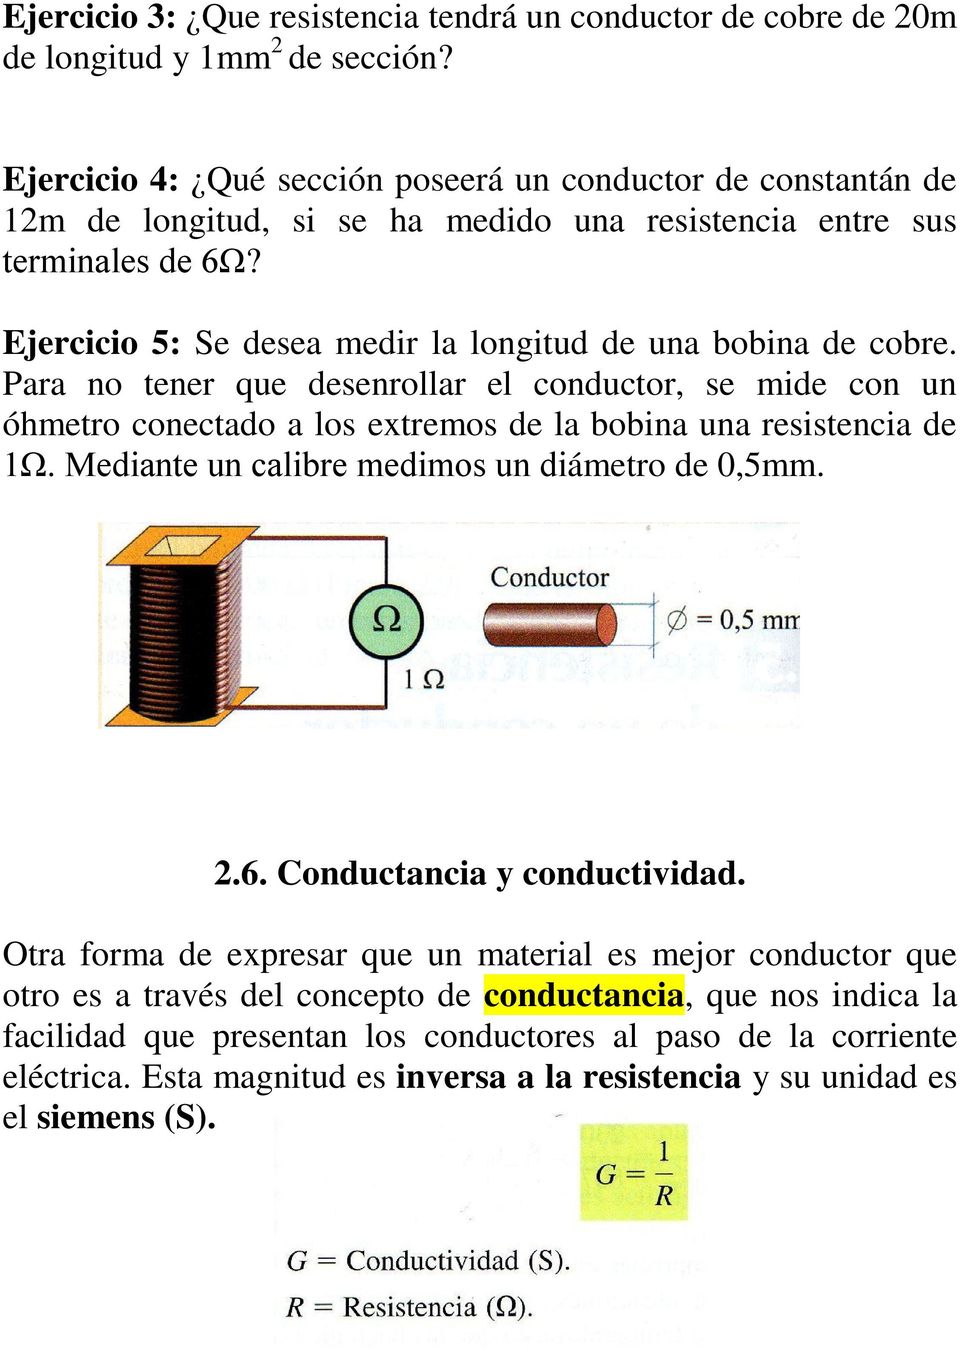 Ejercicio 5: Se desea medir la longitud de una bobina de cobre. Para no tener que desenrollar el conductor, se mide con un óhmetro conectado a los extremos de la bobina una resistencia de 1Ω.